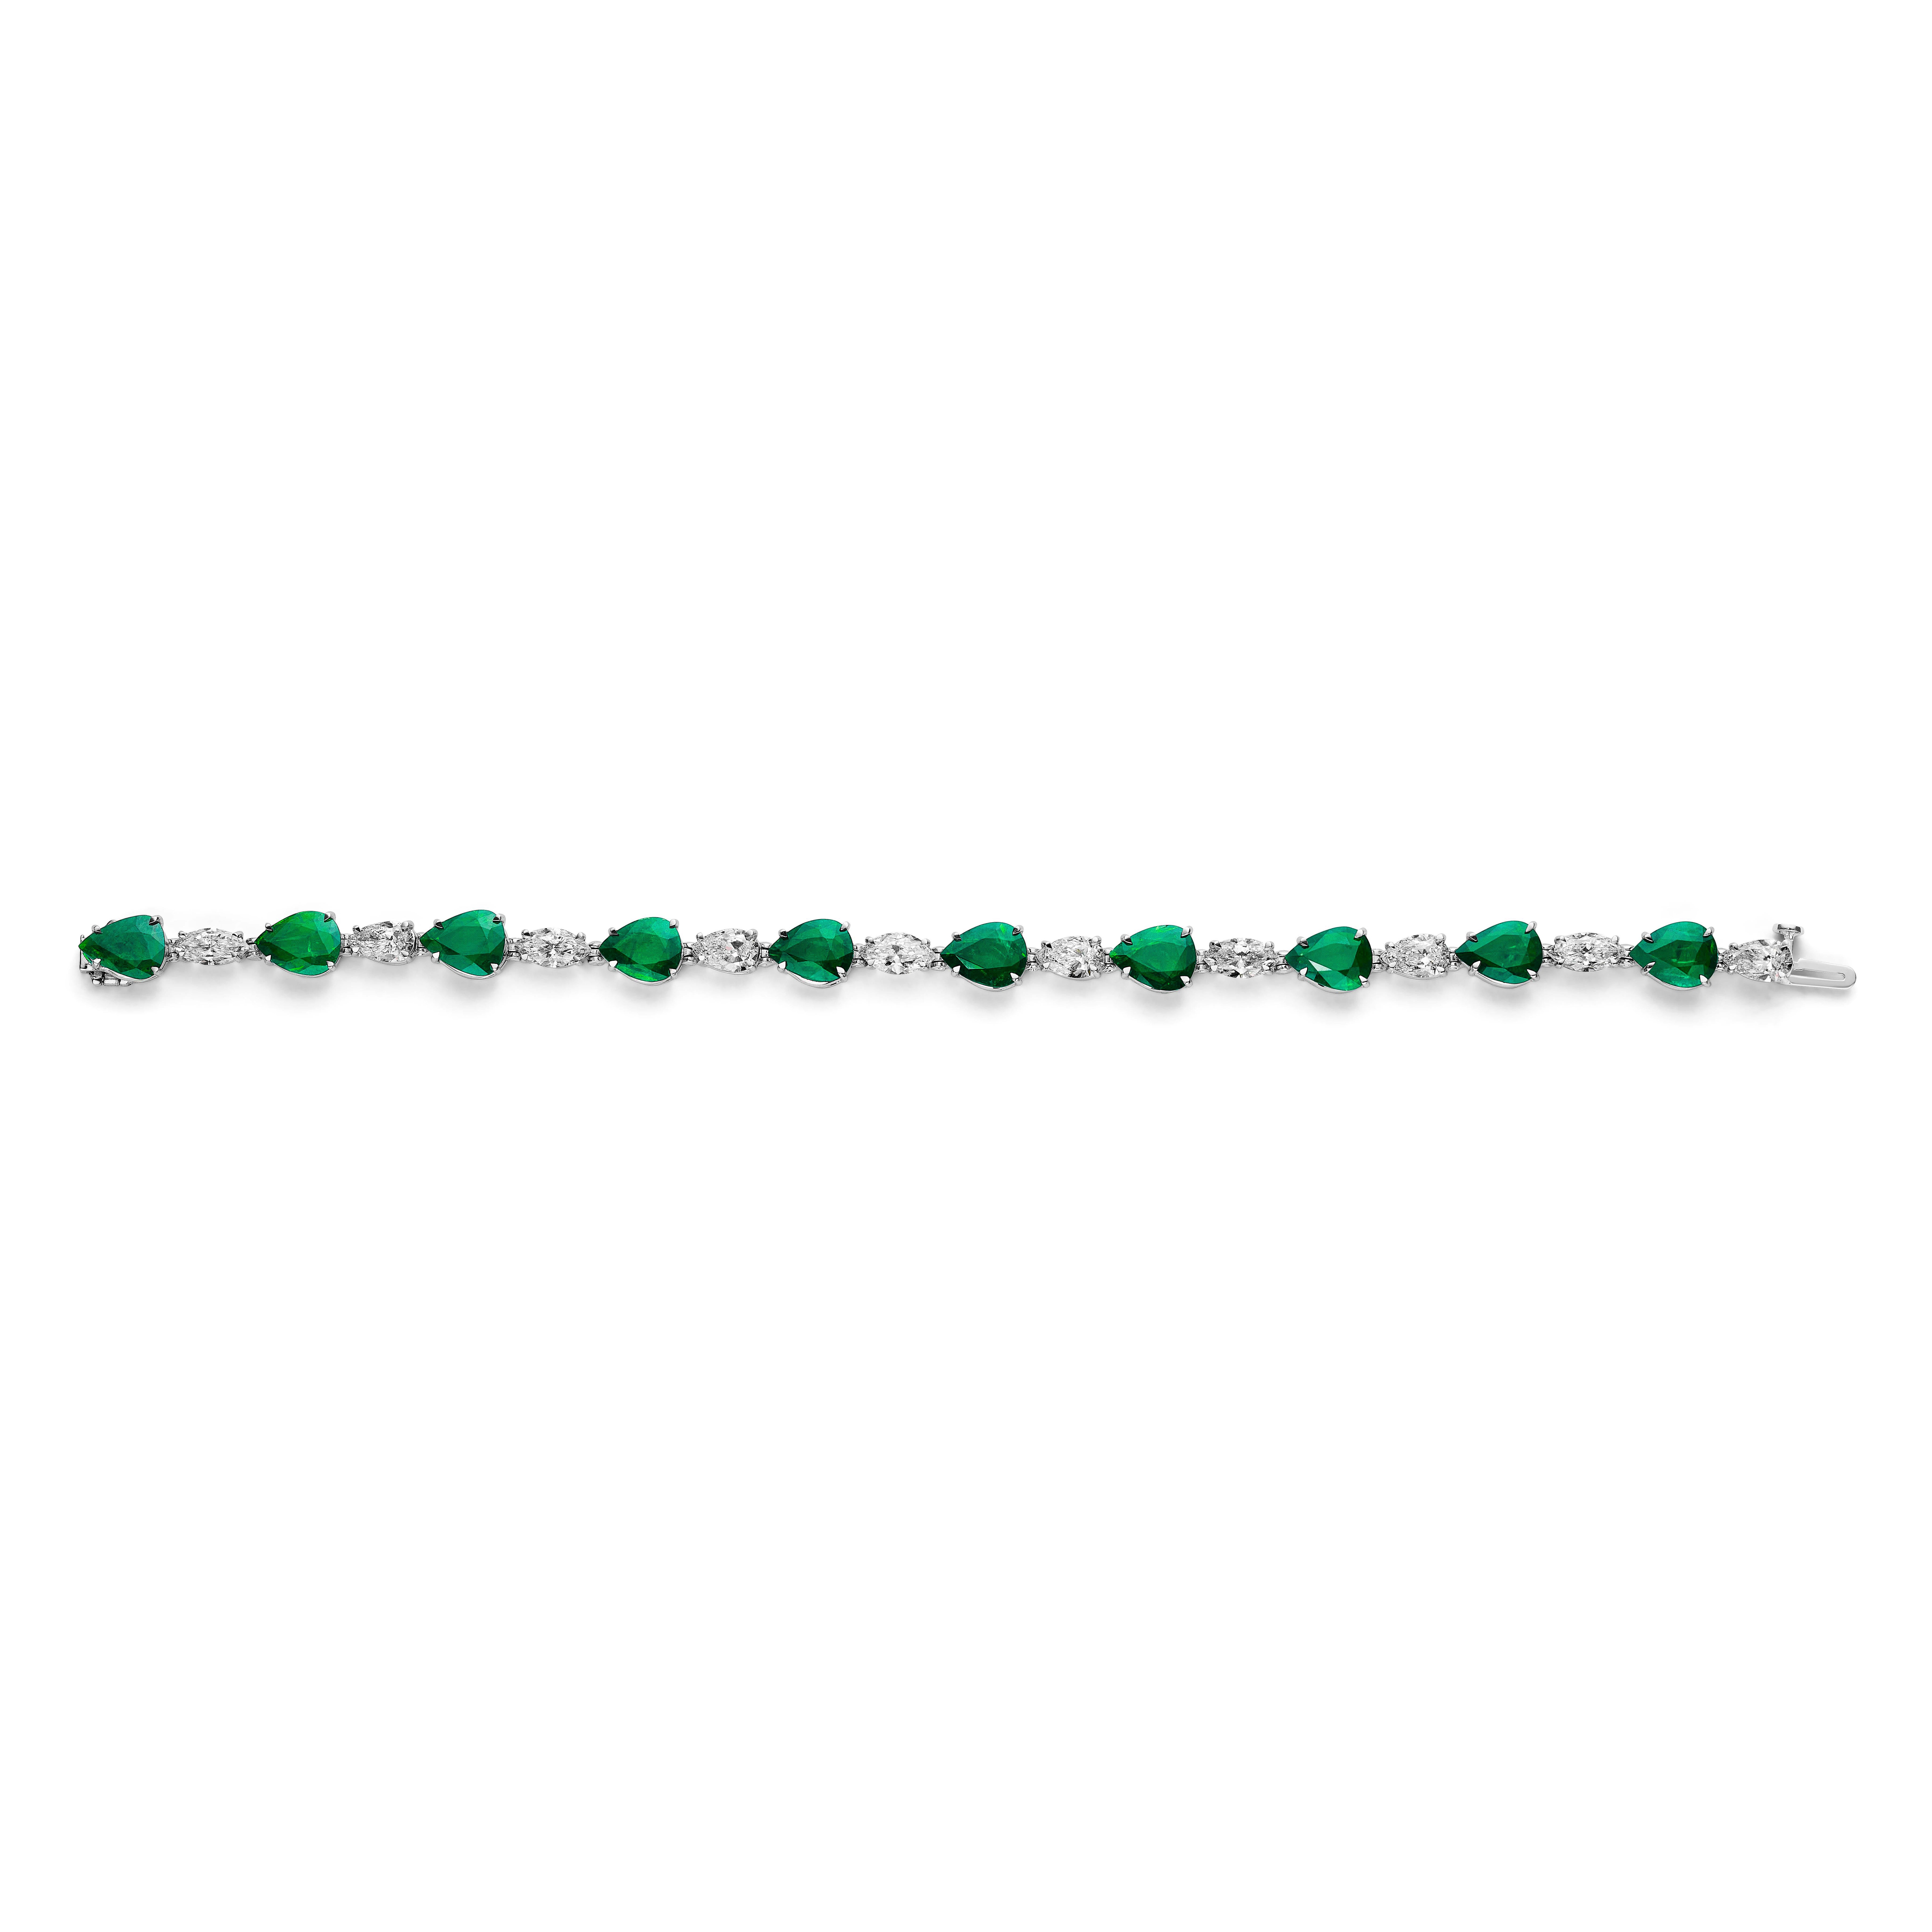 Prächtiges Rubin- und Diamantarmband

10 birnenförmige Smaragde mit einem Gewicht von etwa 11,75 Karat, abwechselnd mit 10 marquise- und birnenförmigen Diamanten mit einem Gewicht von etwa 5,05 Karat.
Jeder Diamant ist einzeln von GIA als DEF color